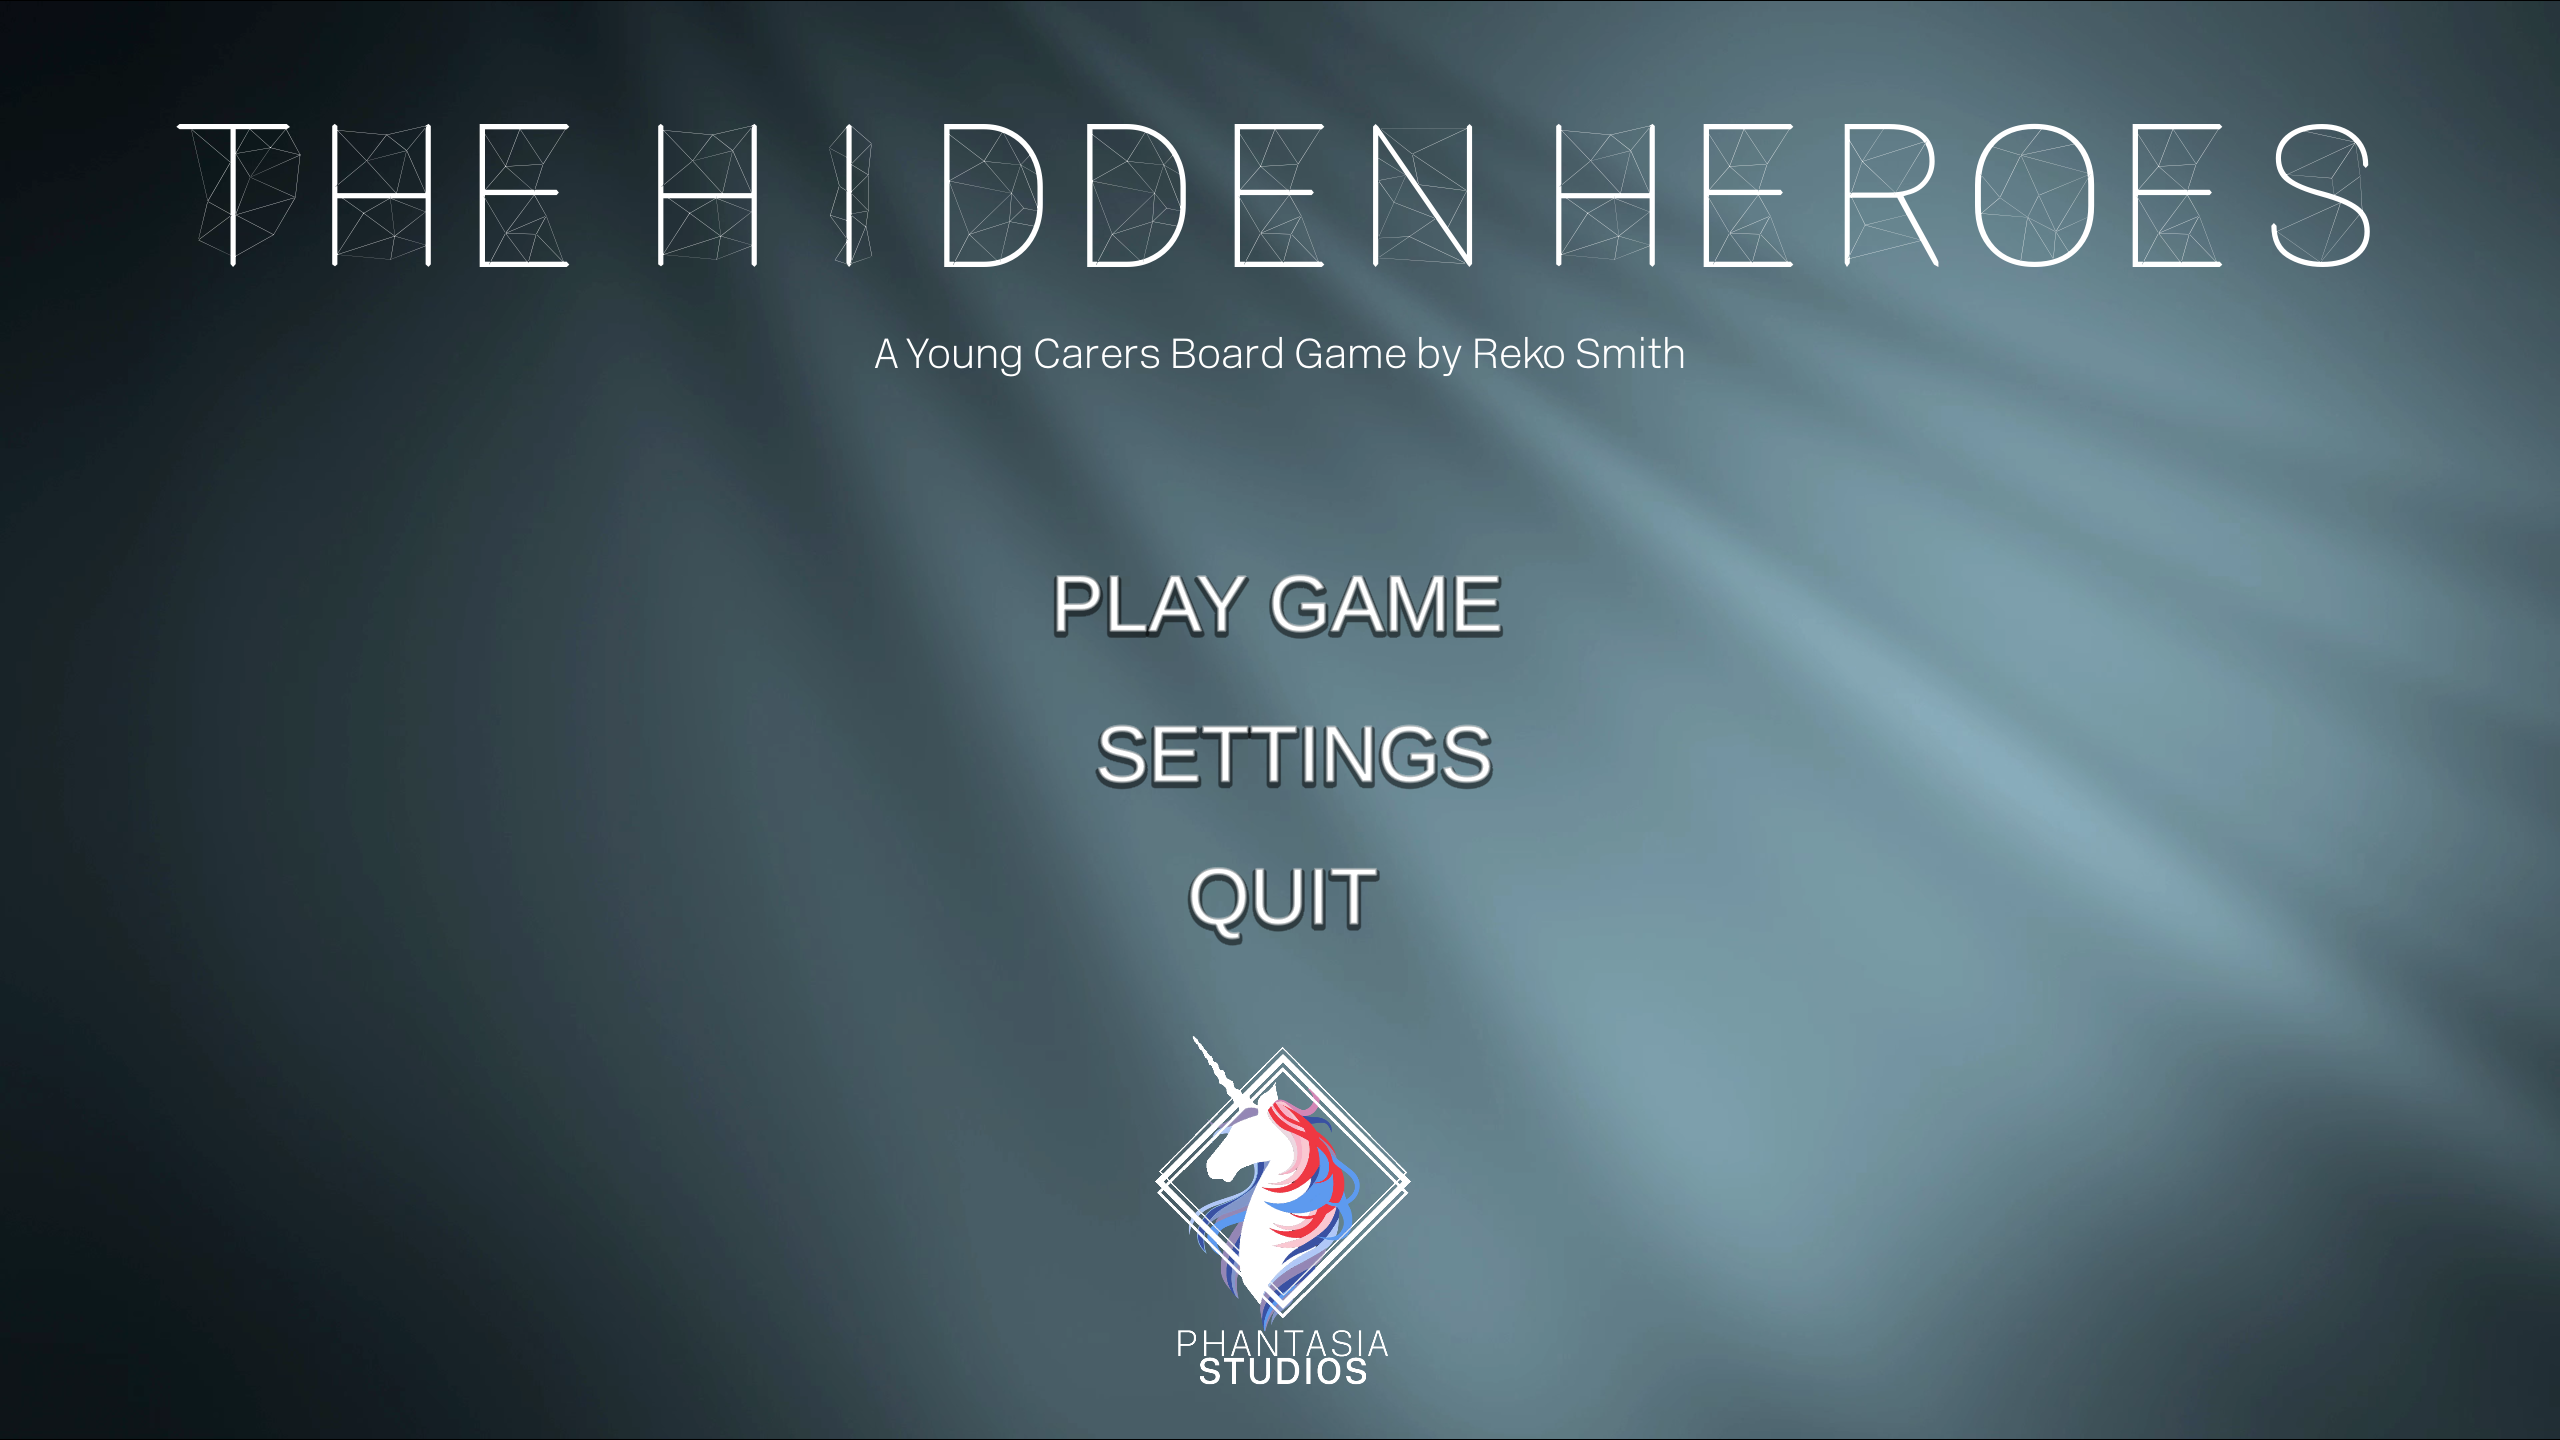 The Hidden Heroes